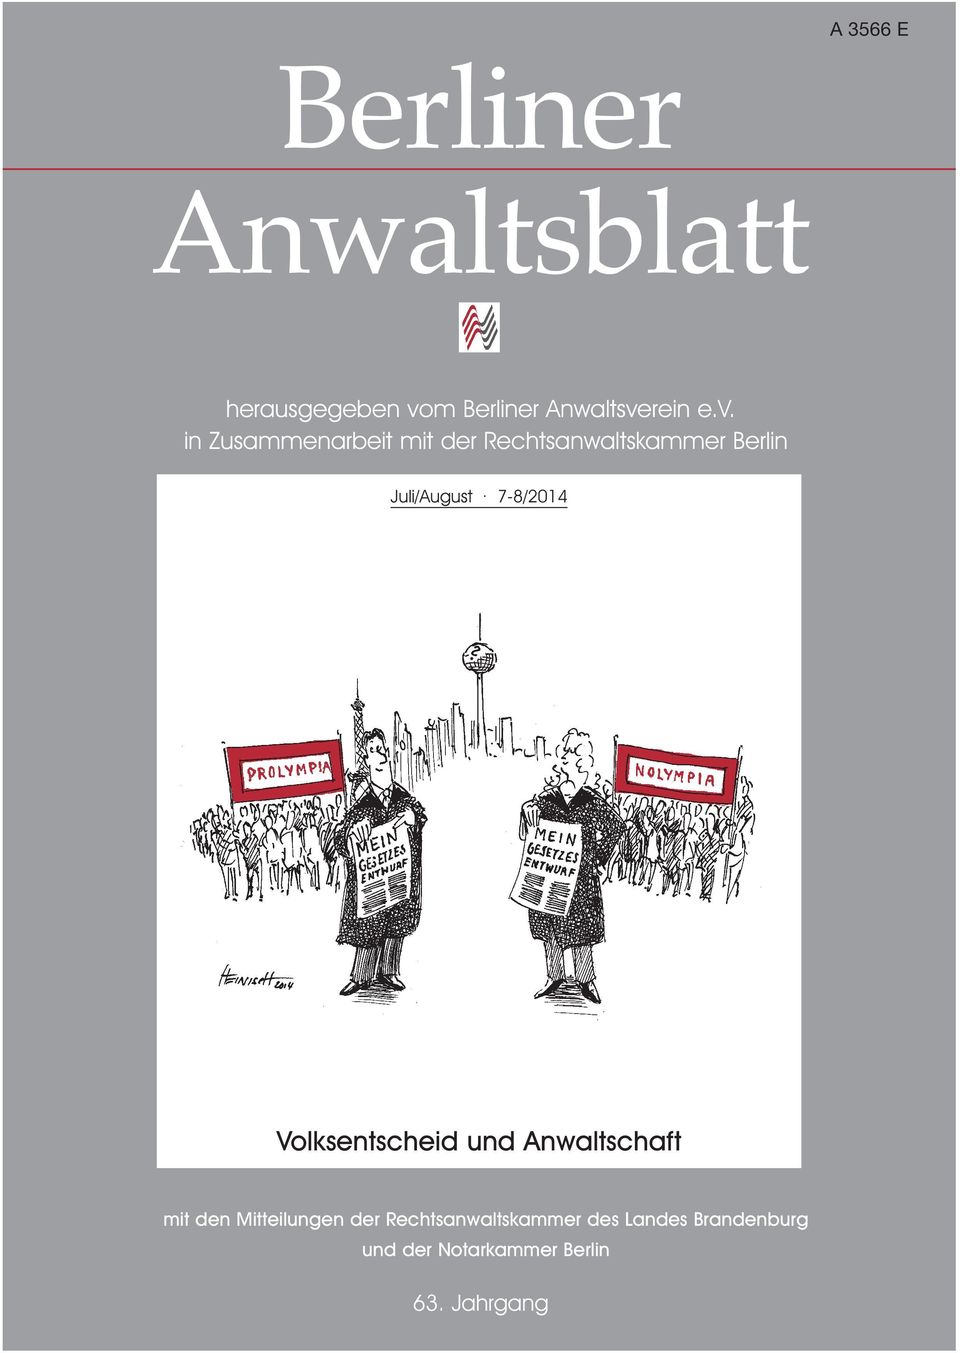 7-8/2014 Volksentscheid und Anwaltschaft mit den Mitteilungen der